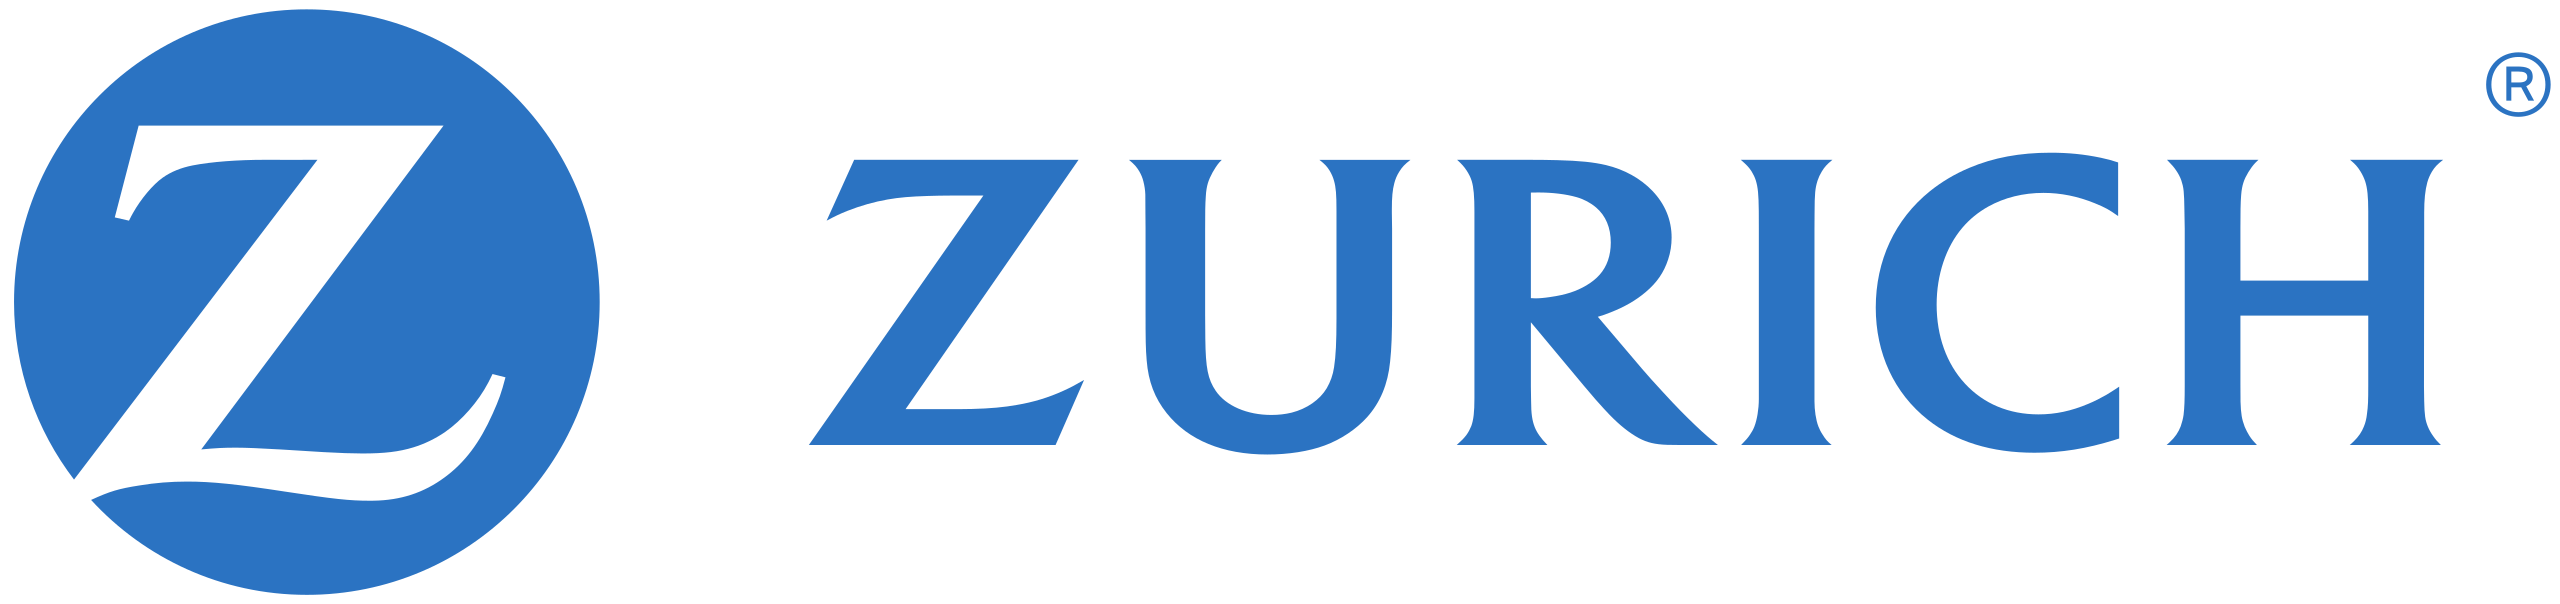 zurich_logo.png